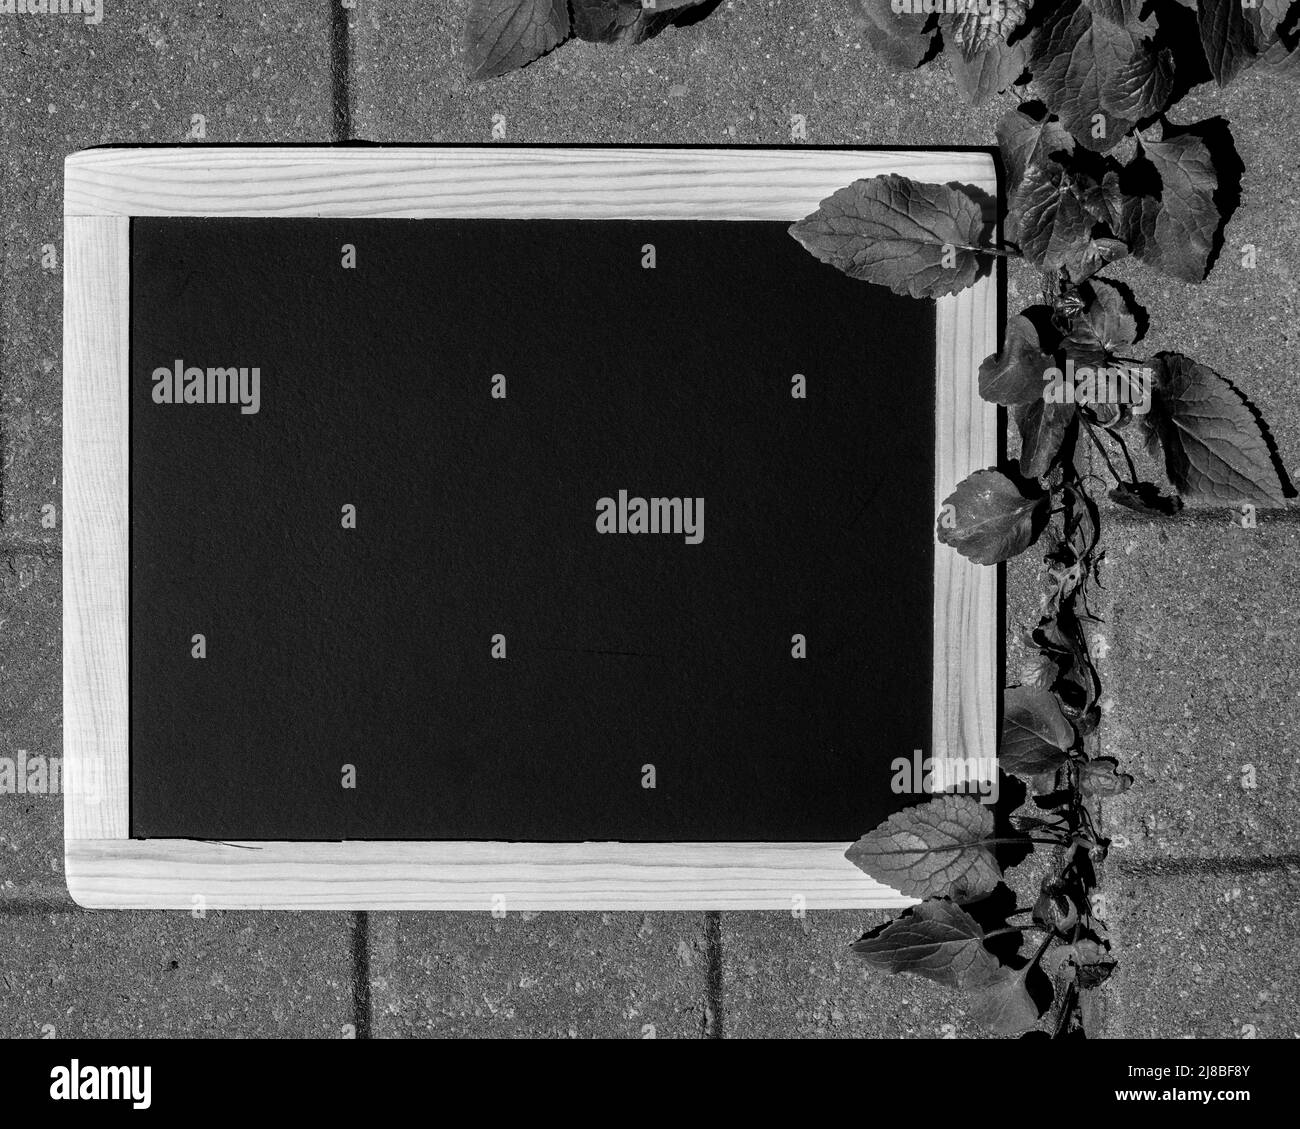 Un alto angolo nero e bianco di una lavagna vuota (lavagna) con telaio in legno, su pavimento in cemento, per scrivere il tuo messaggio su - stock photograp Foto Stock